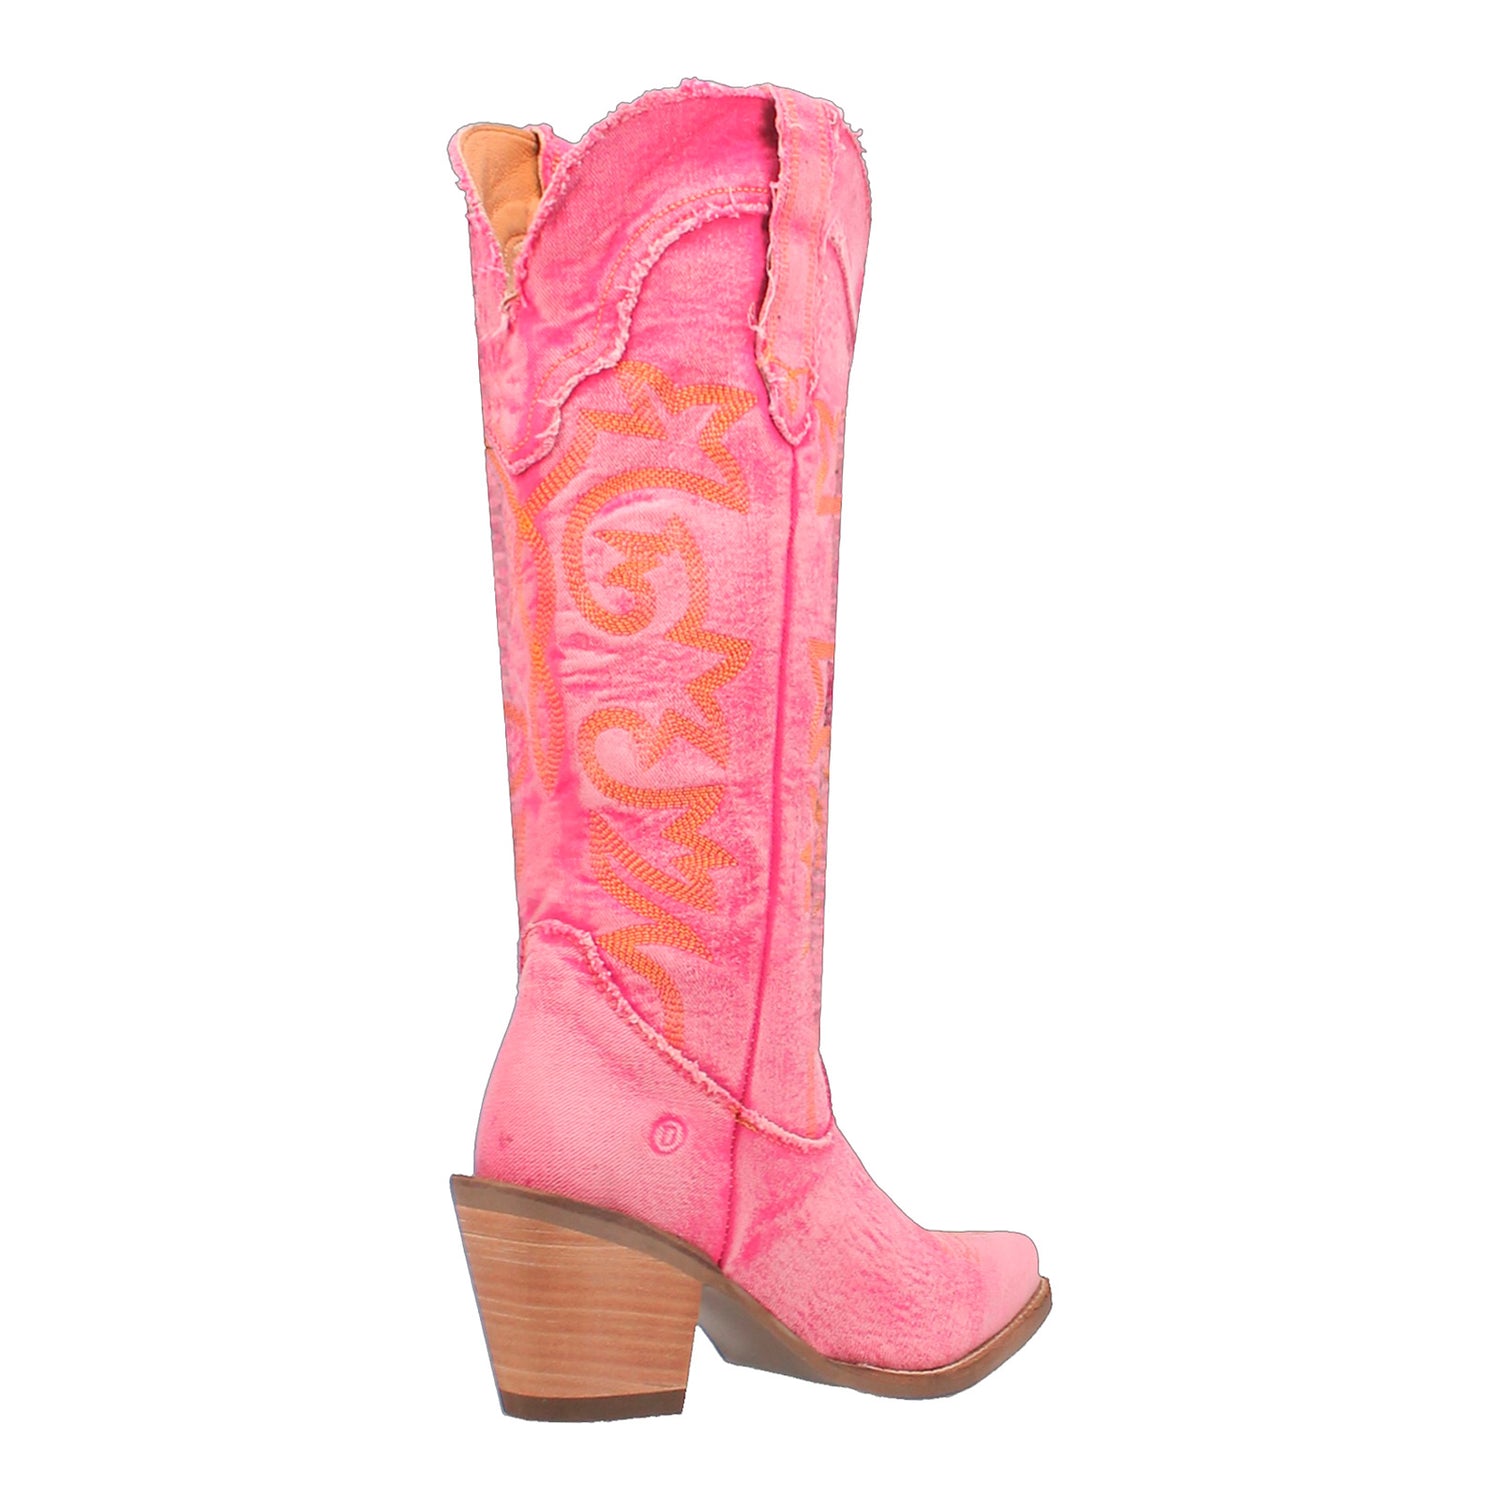 Peltz Shoes  Women's Dingo Texas Tornado Boot Pink DI943-PINK